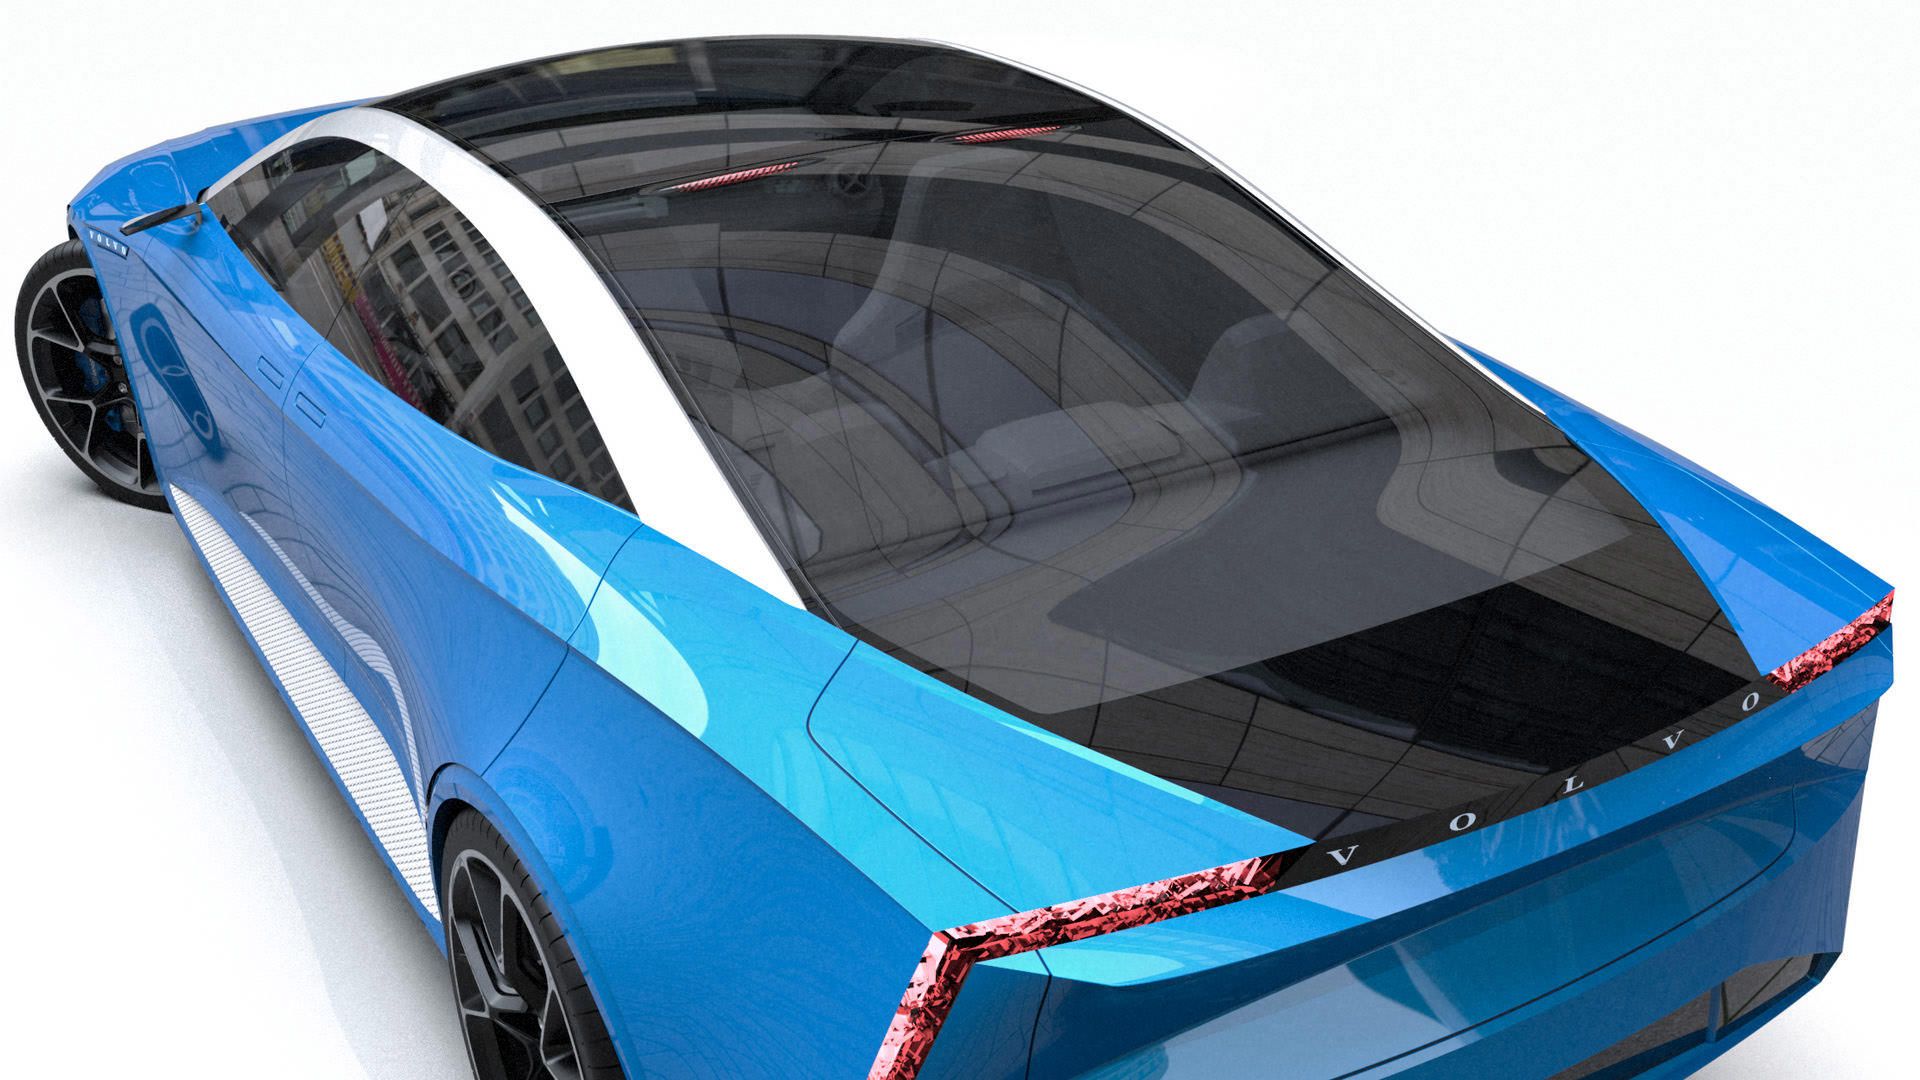 شیشه عقب خودروی مفهومی ولوو کریگر / Volvo Krigare آبی رنگ